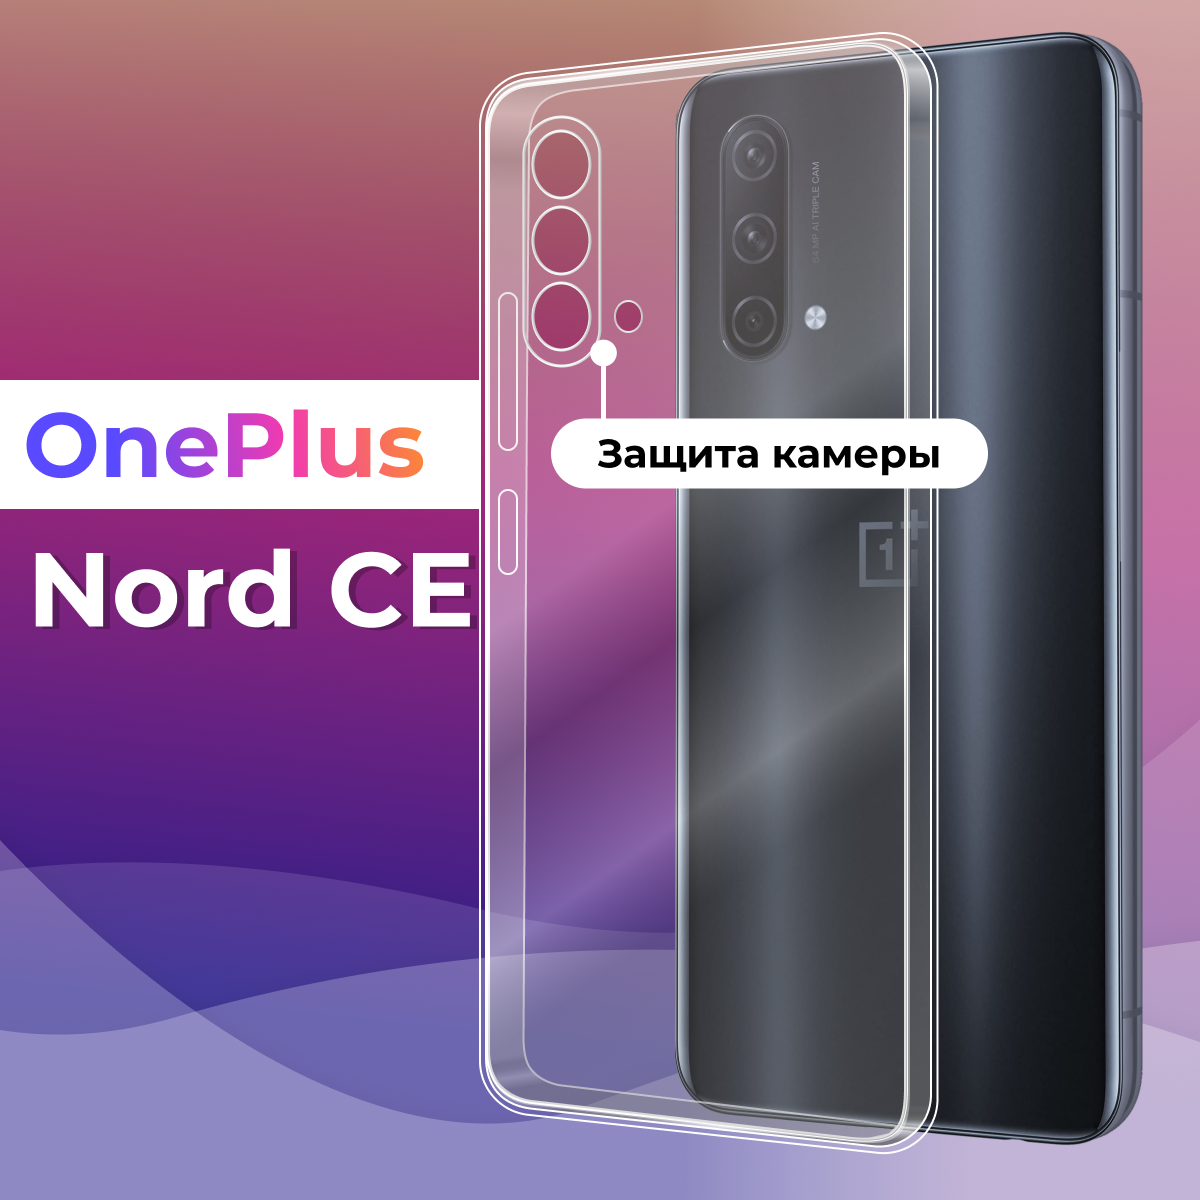 Тонкий силиконовый чехол для смартфона OnePlus Nord CE / Противоударный чехол для телефона Ван Плас Норд СЕ с защитой камеры (Прозрачный)